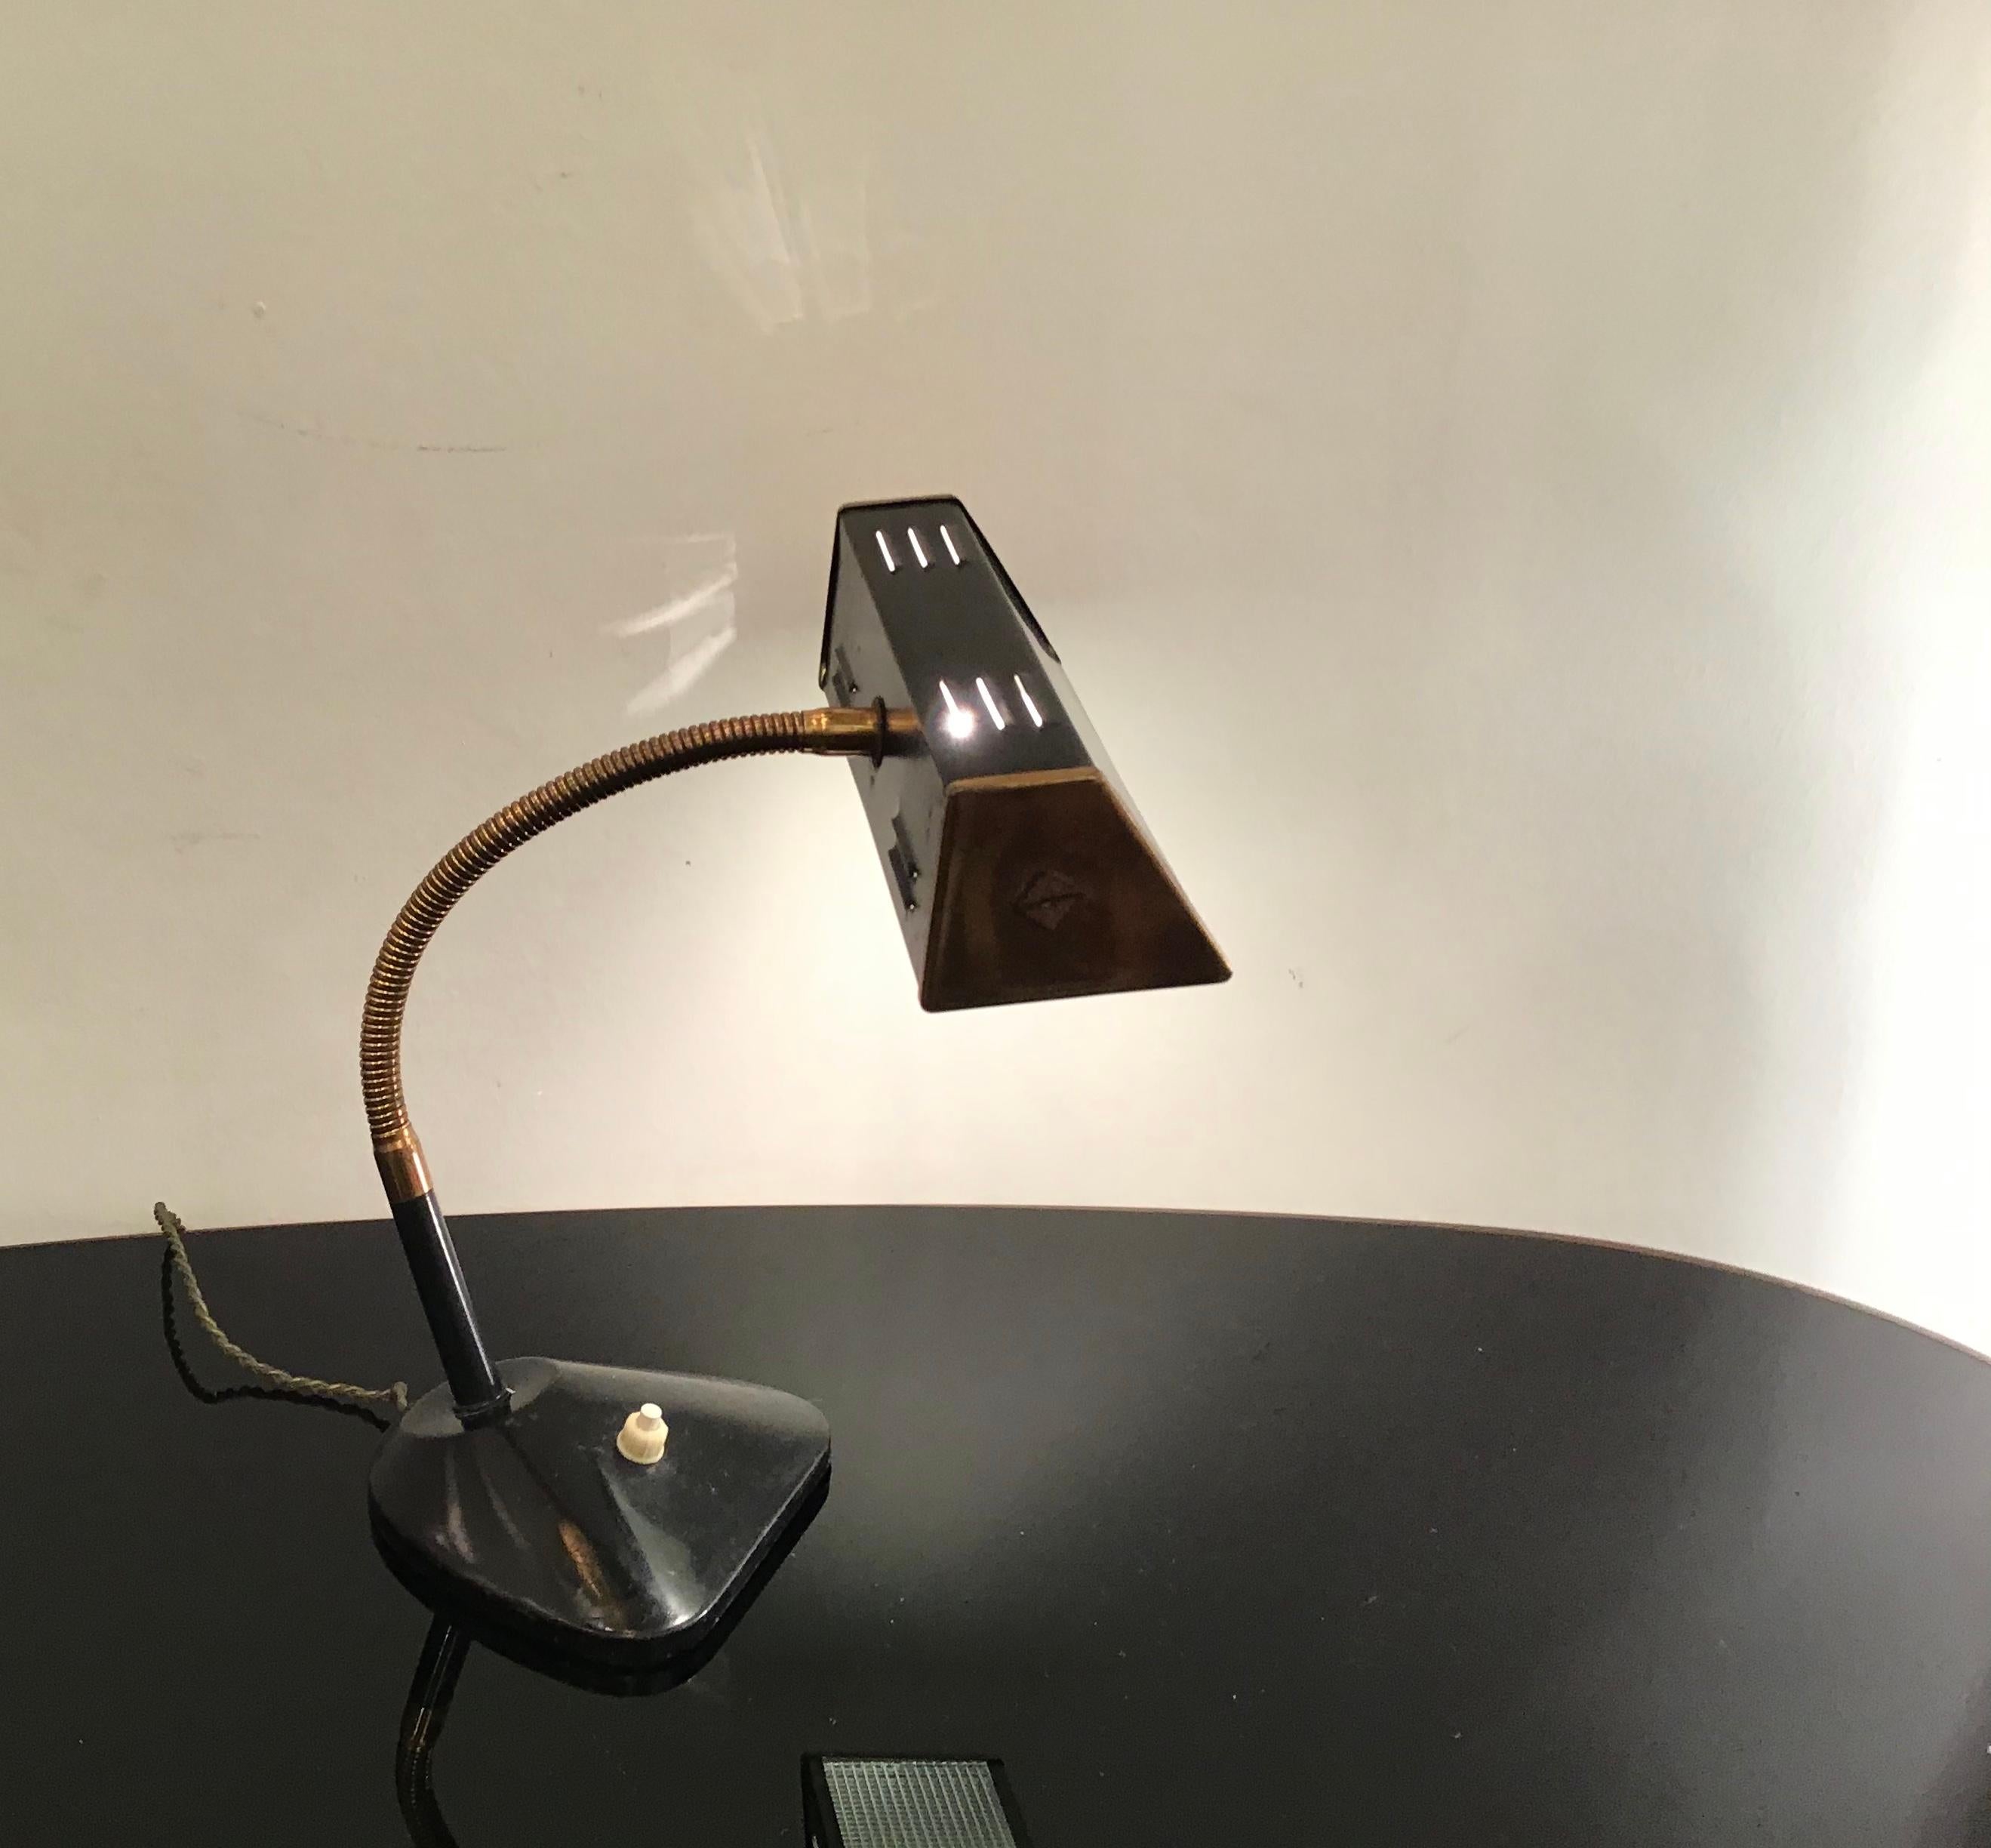 Lampe de table de style Stilnovo en laiton, verre et métal, 1950, Italie.